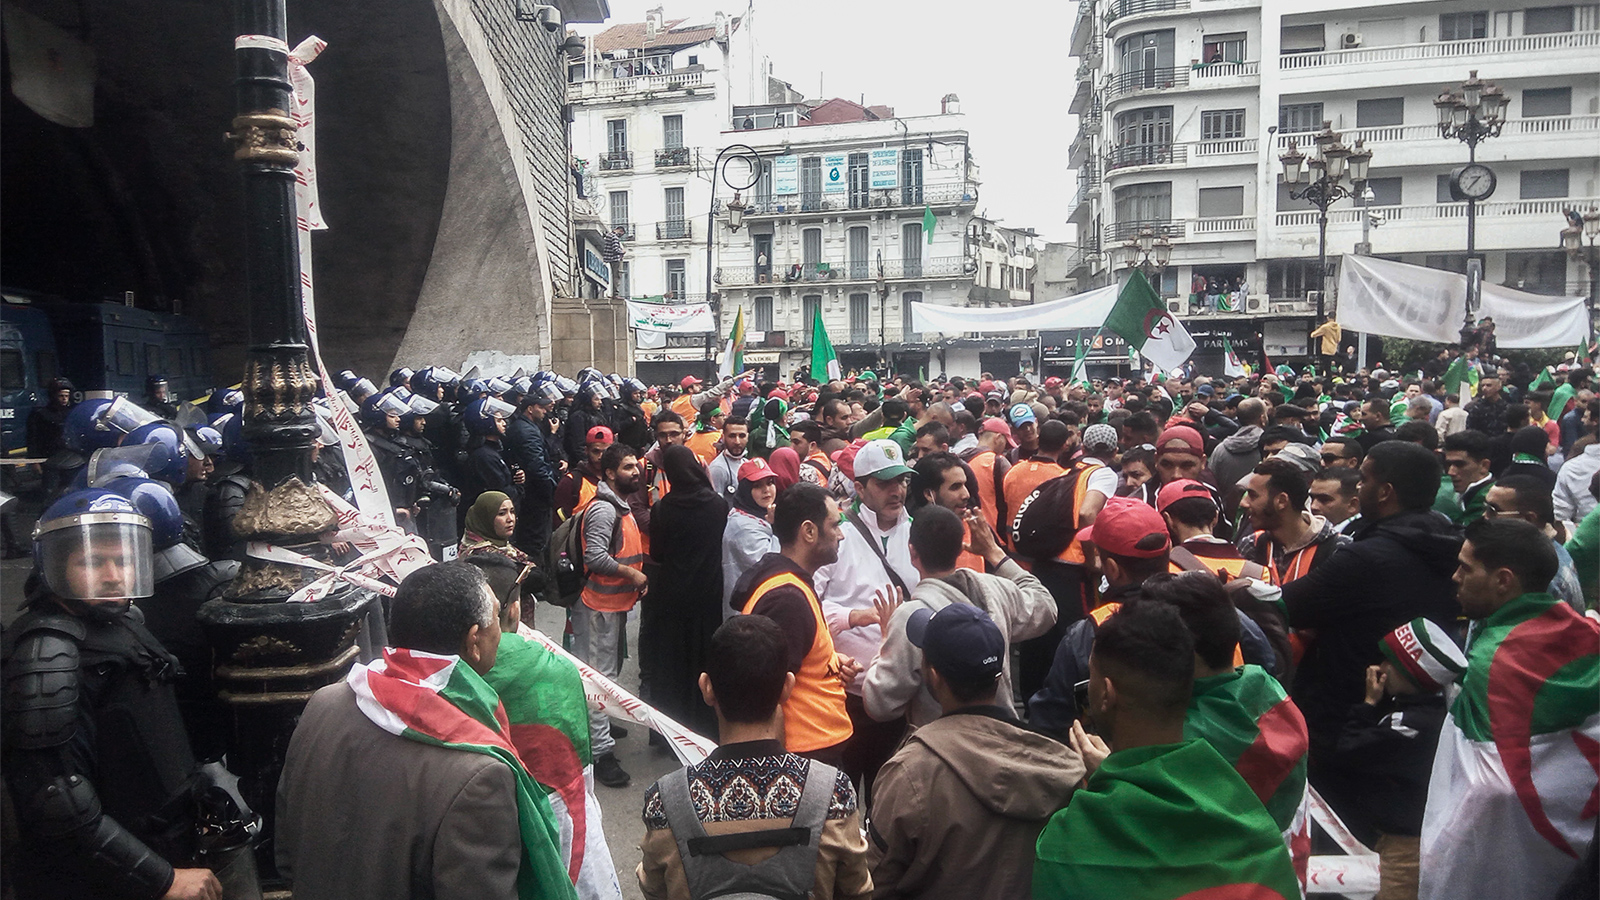 المحتجون يحاولون دخول نفق الجامعة المركزية وشباب السترات البرتقالية يمنعونهم (الجزيرة)